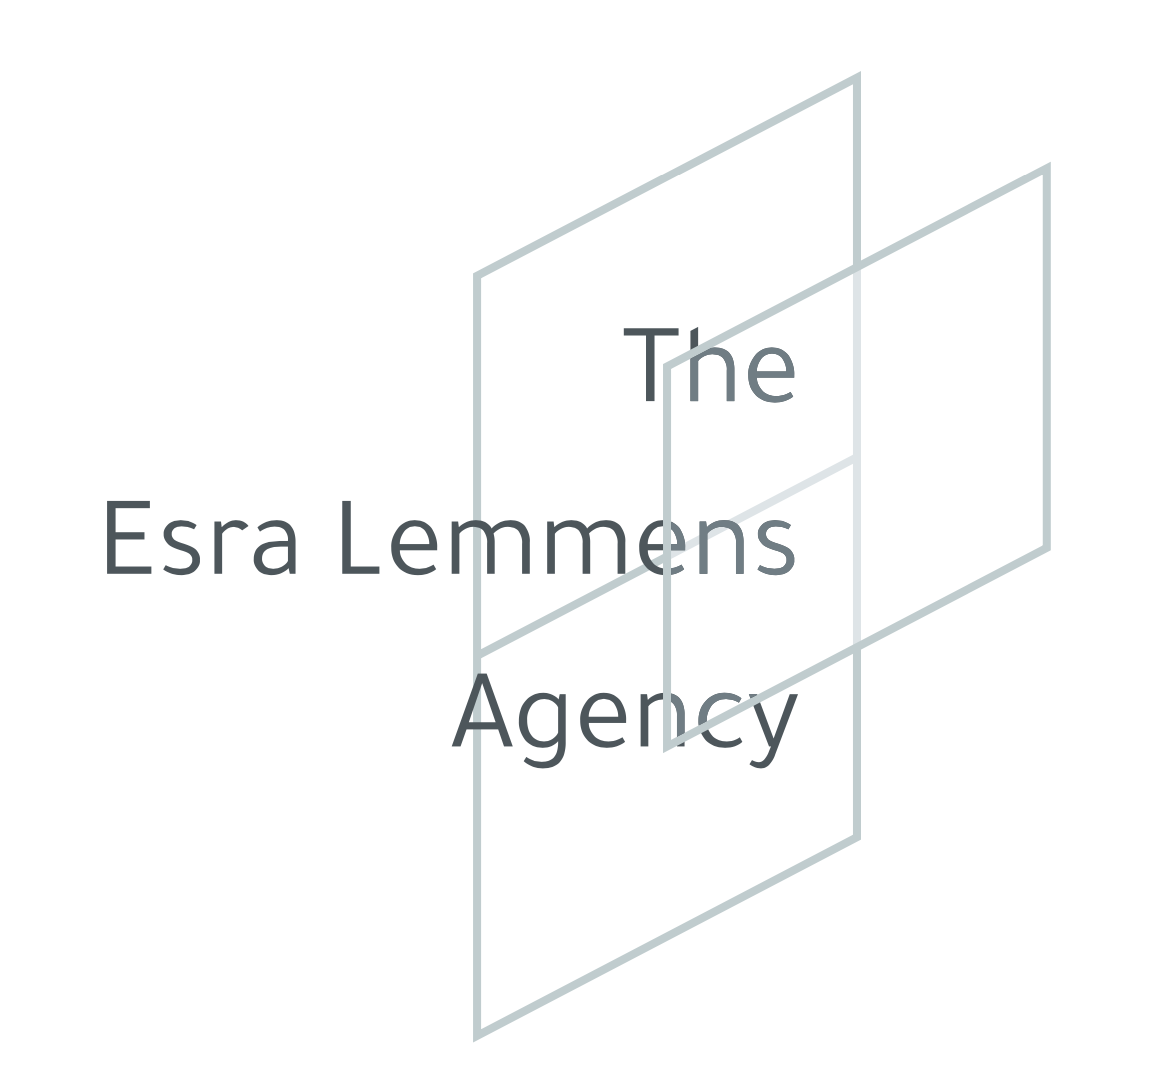 The Esra Lemmens Agency